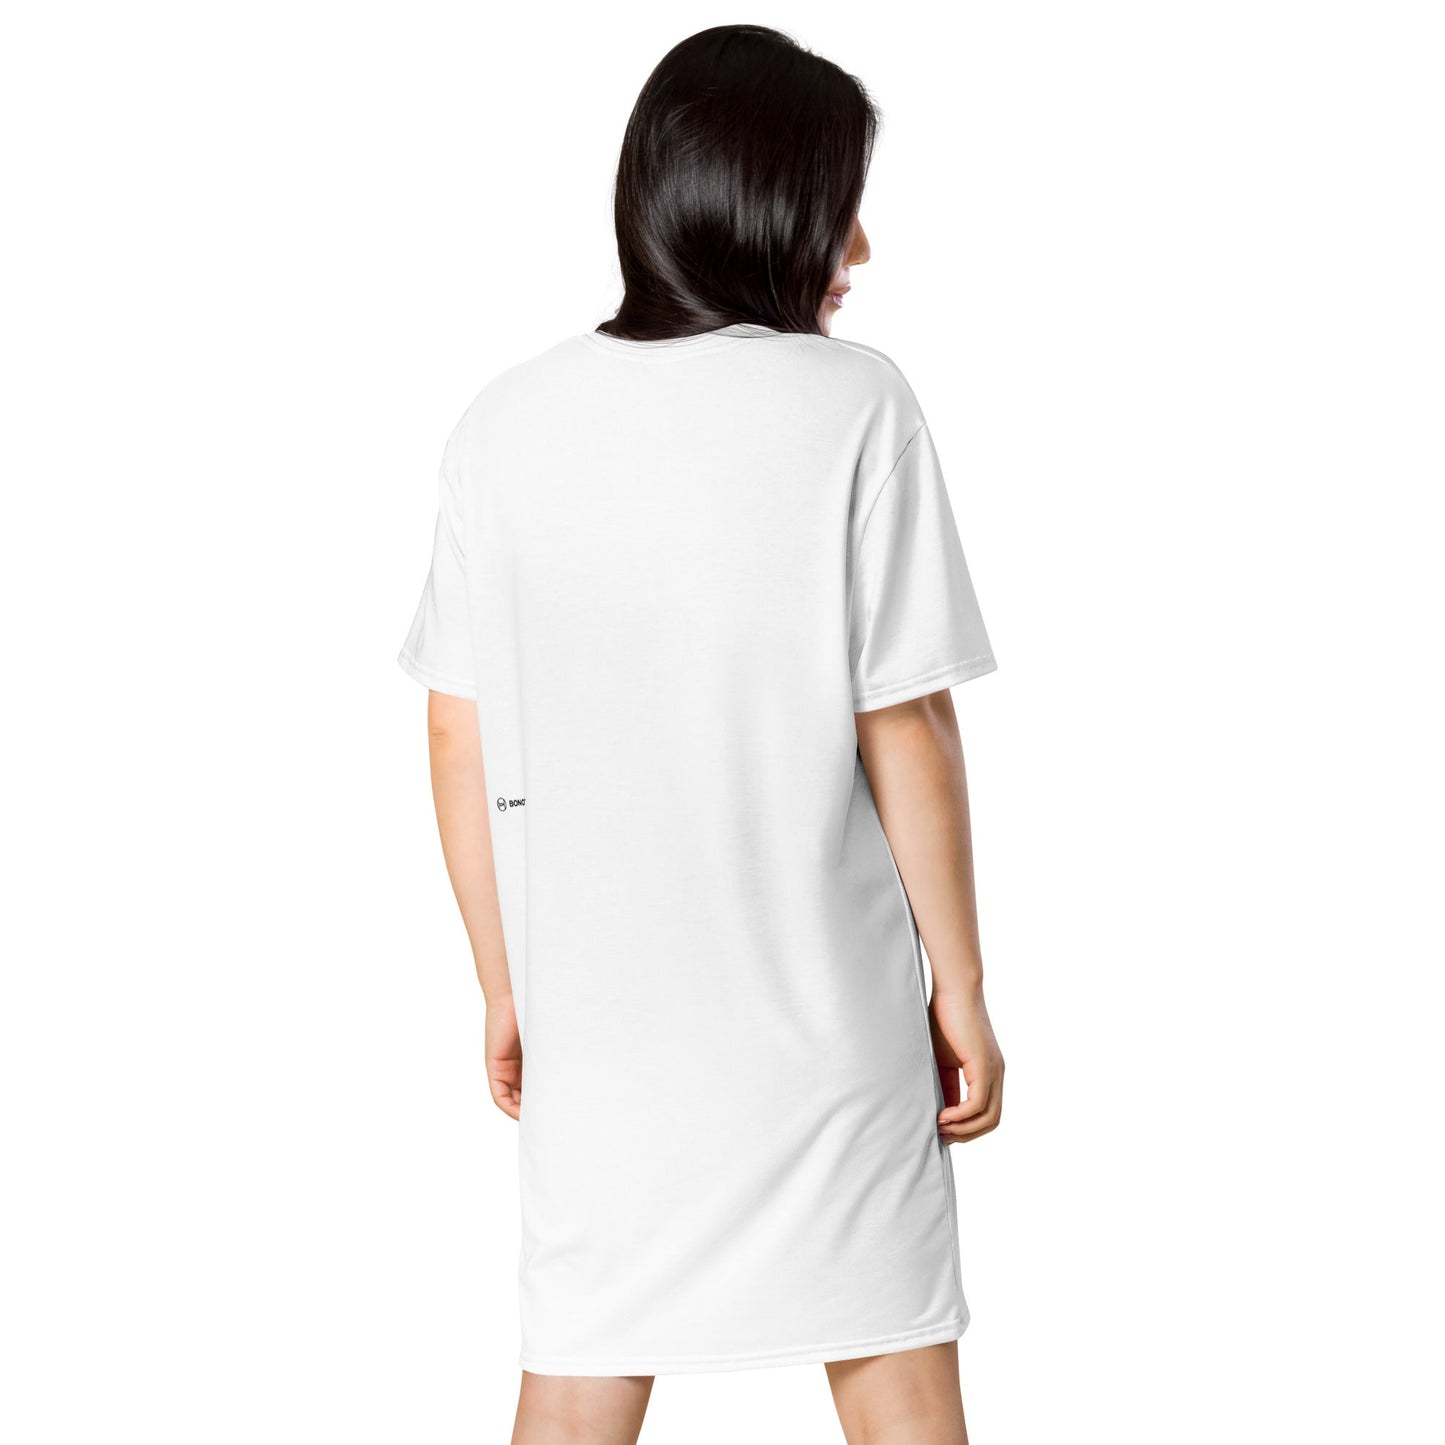 INTUATOR Women's T-shirt Dress - Bonotee